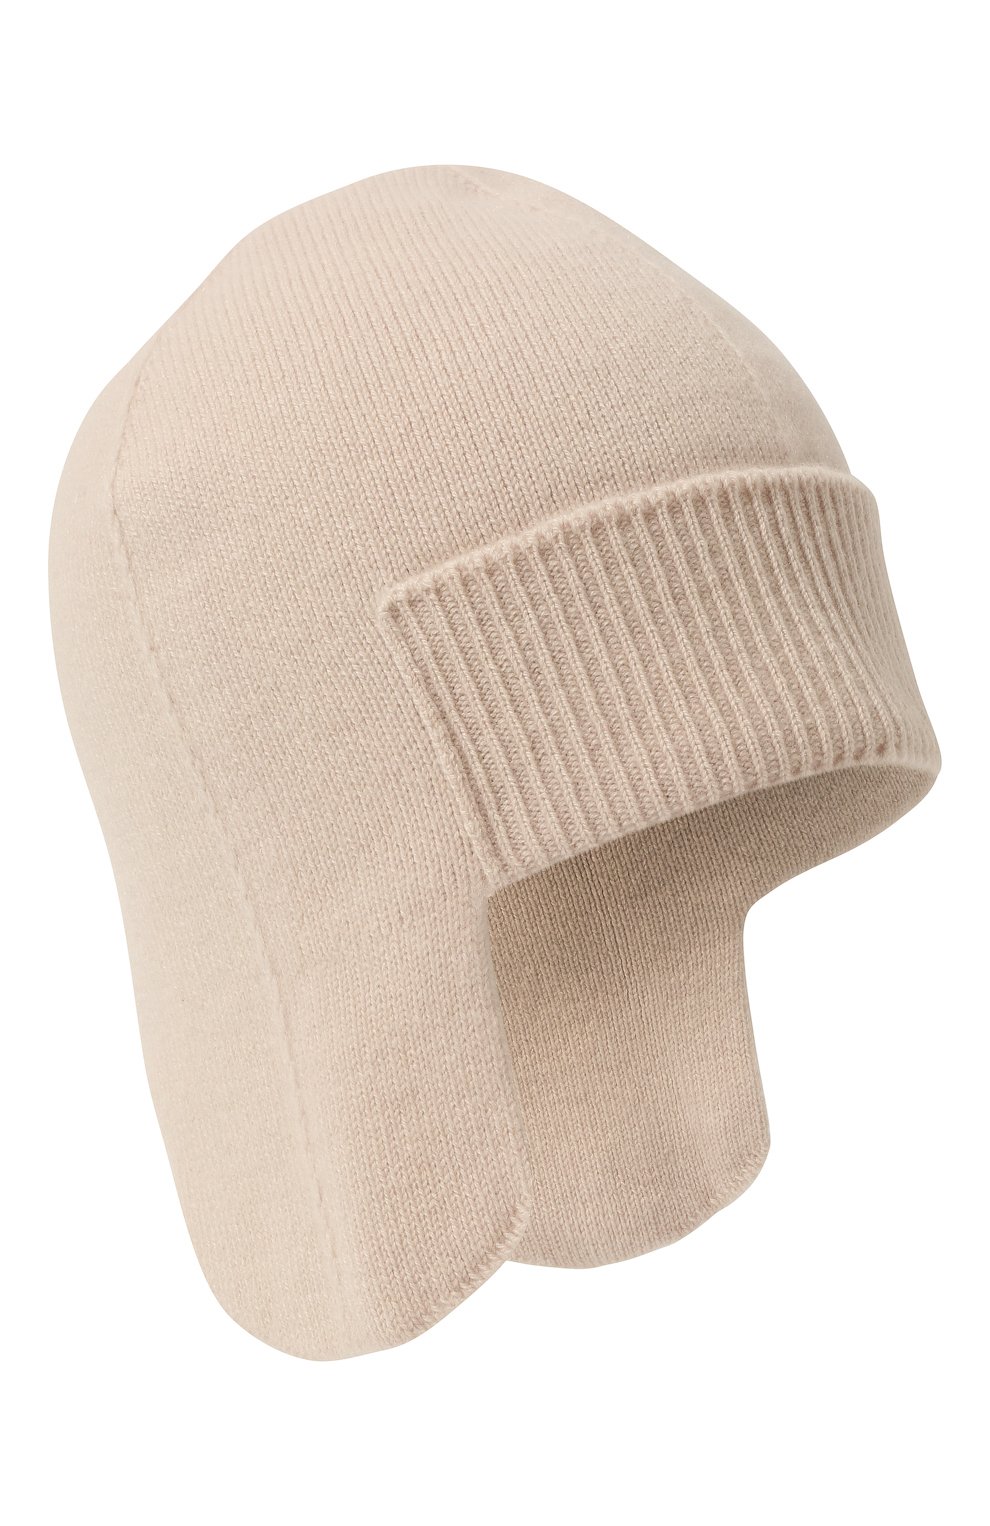 Женская шапка-ушанка denmark CANOE кремвого цвета, арт. 4916402 | Фото 1 (Материал: Текстиль, Шерсть)